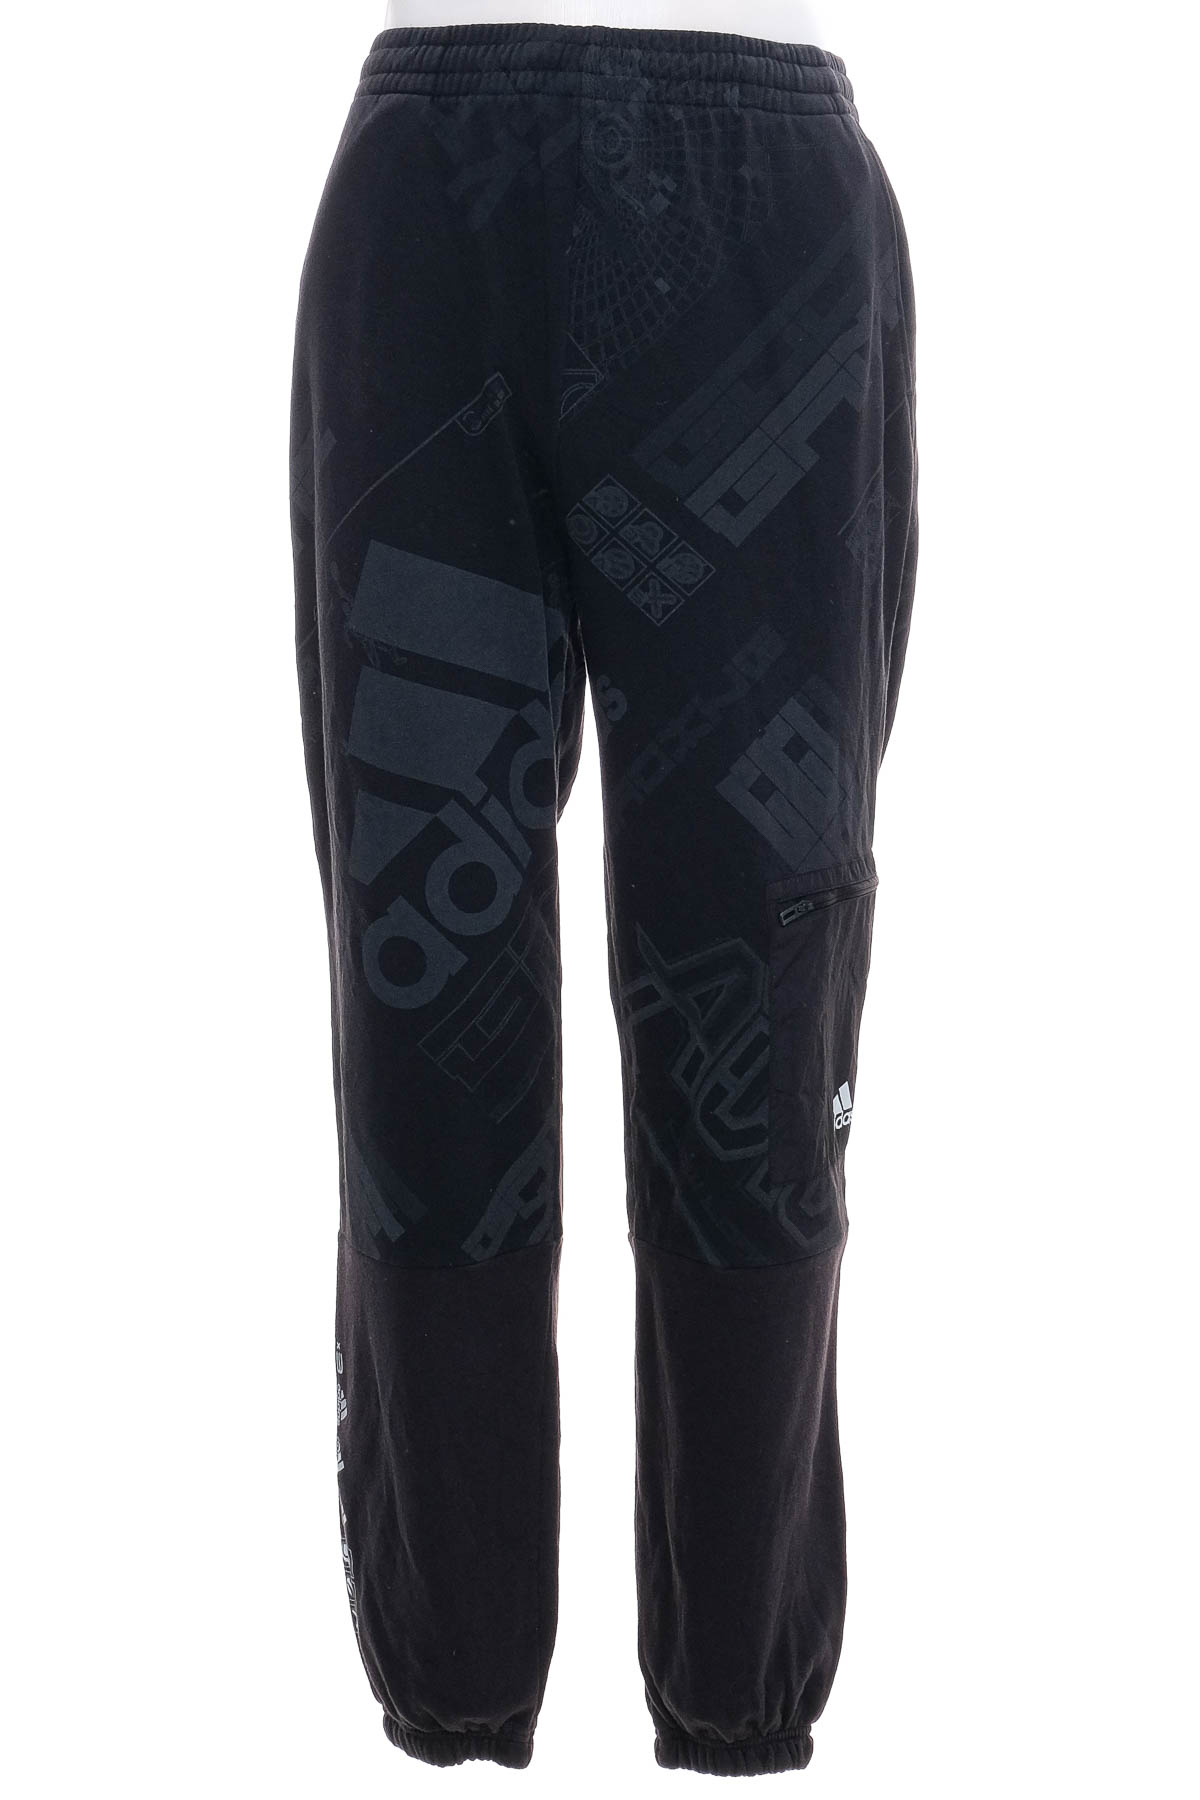 Αθλητικό παντελόνι για αγόρι - Adidas - 0